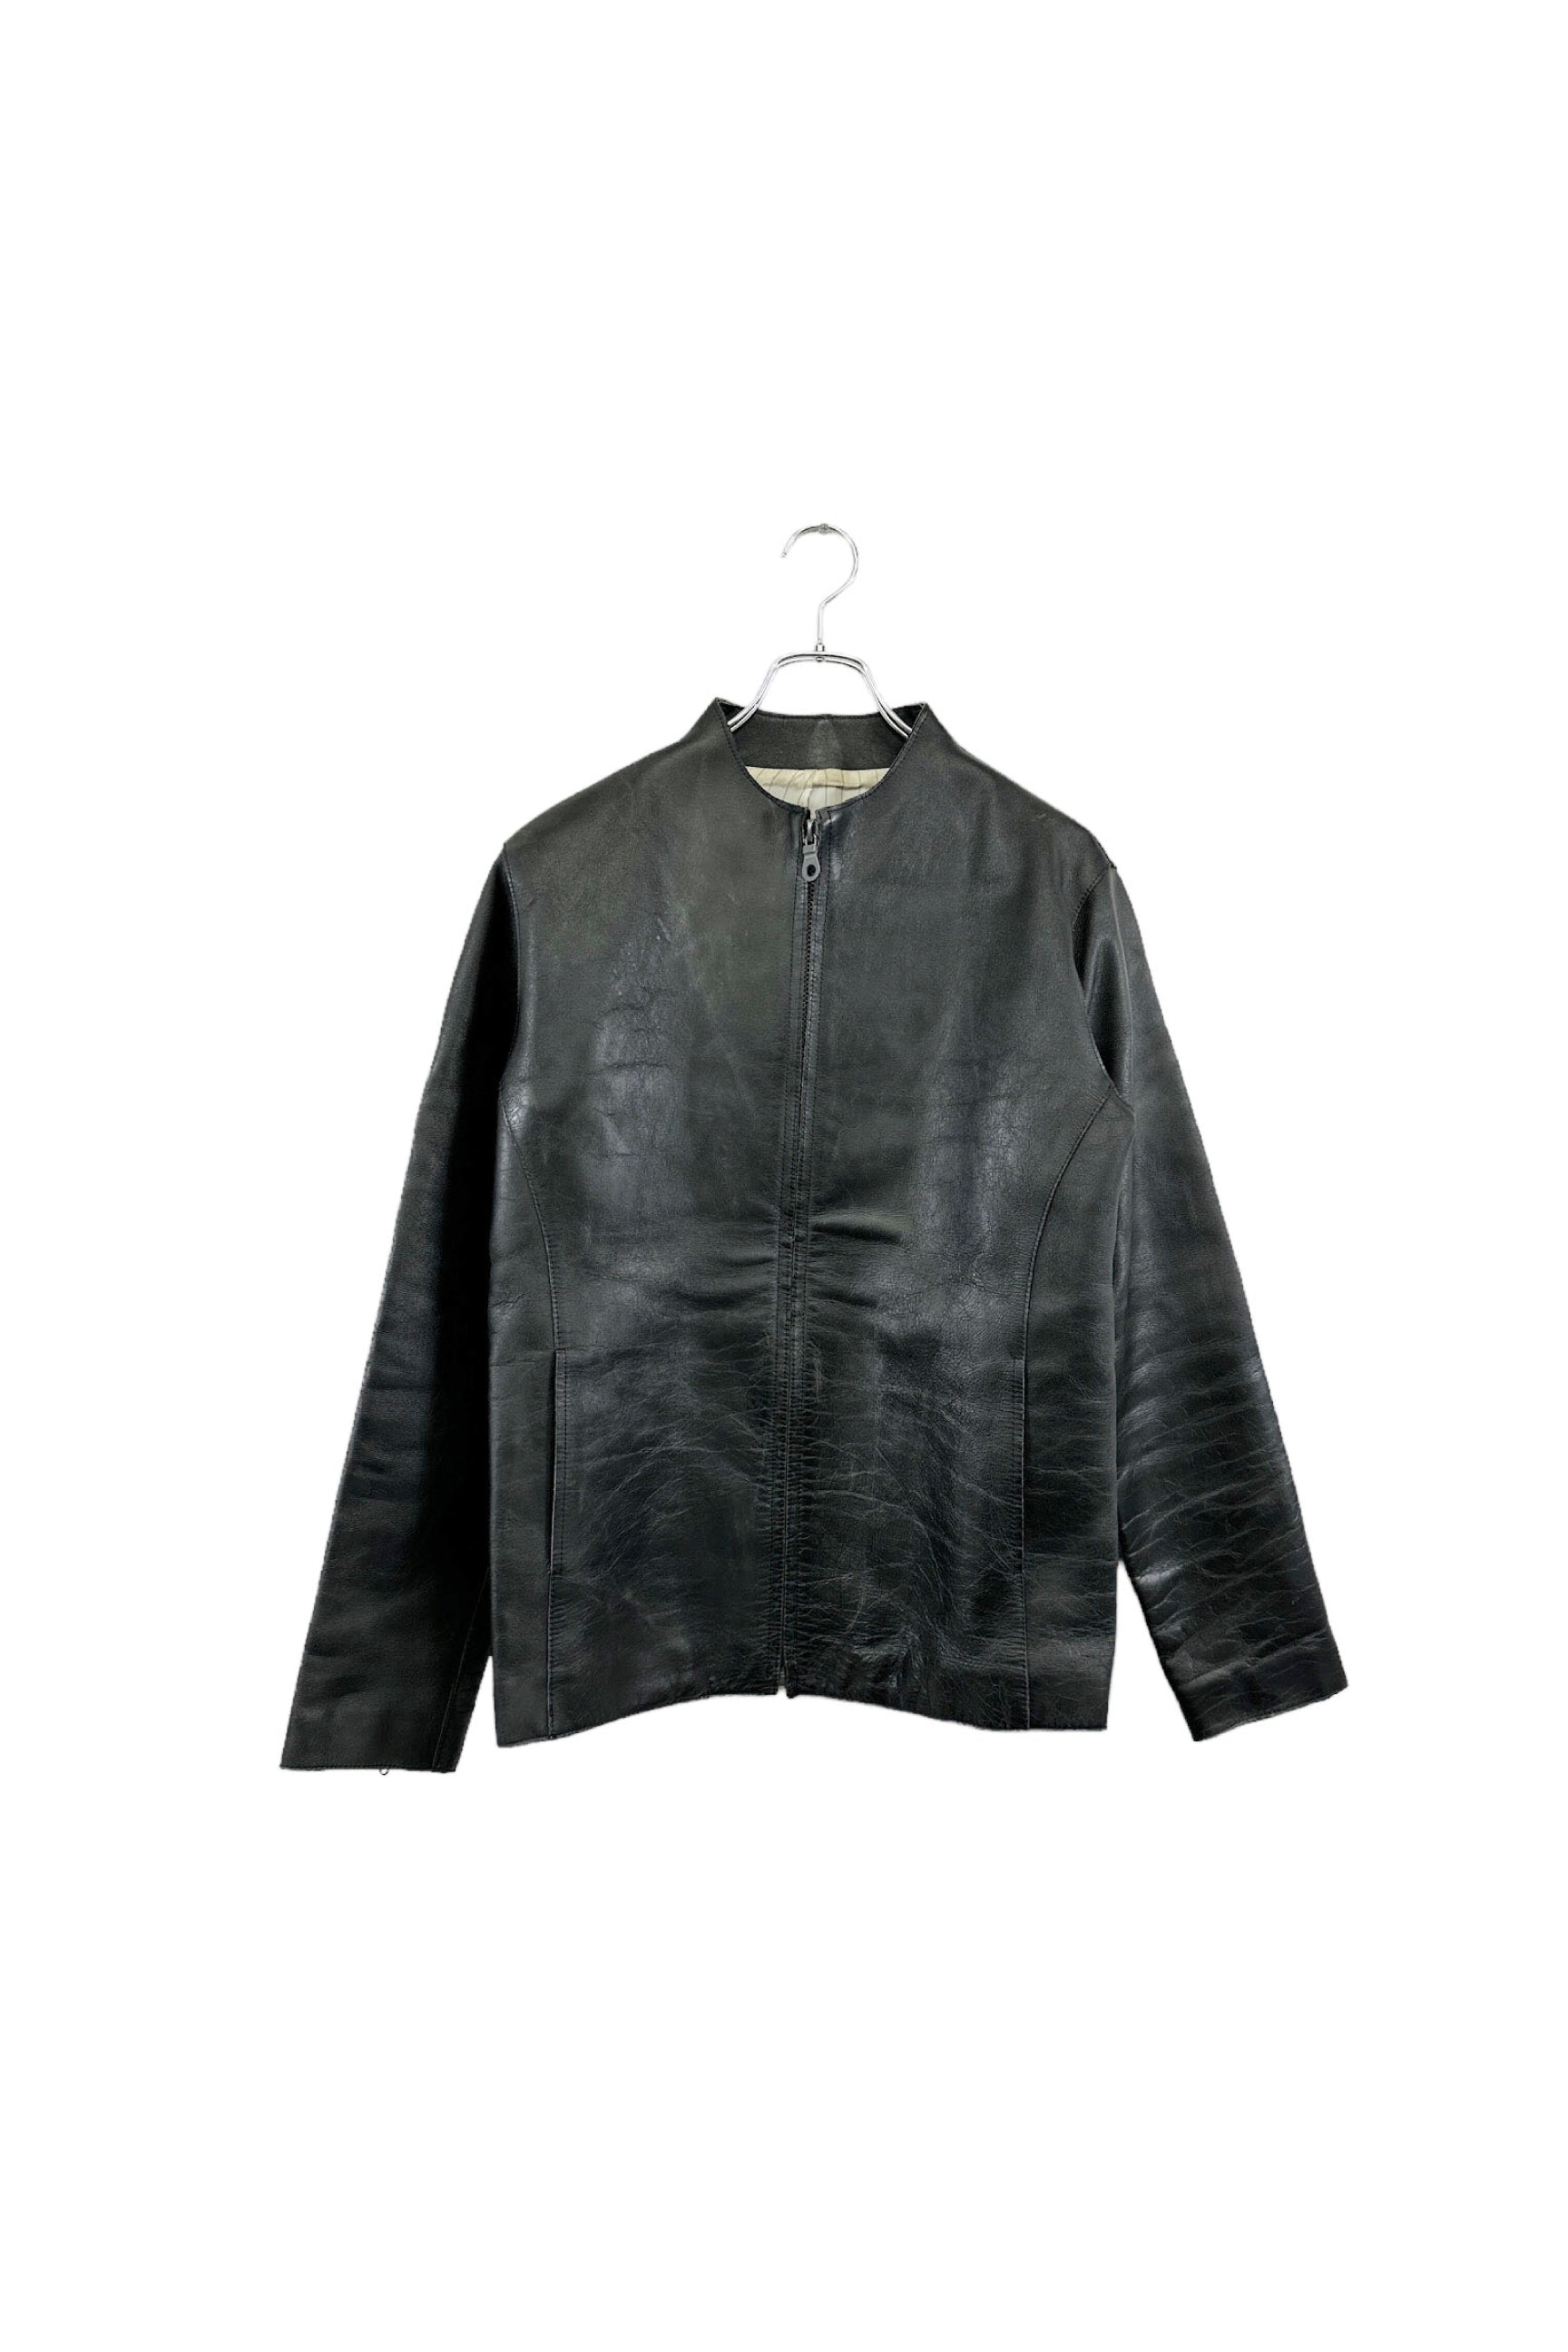 RIP VAN WINKLE leather jacket – ReSCOUNT STORE